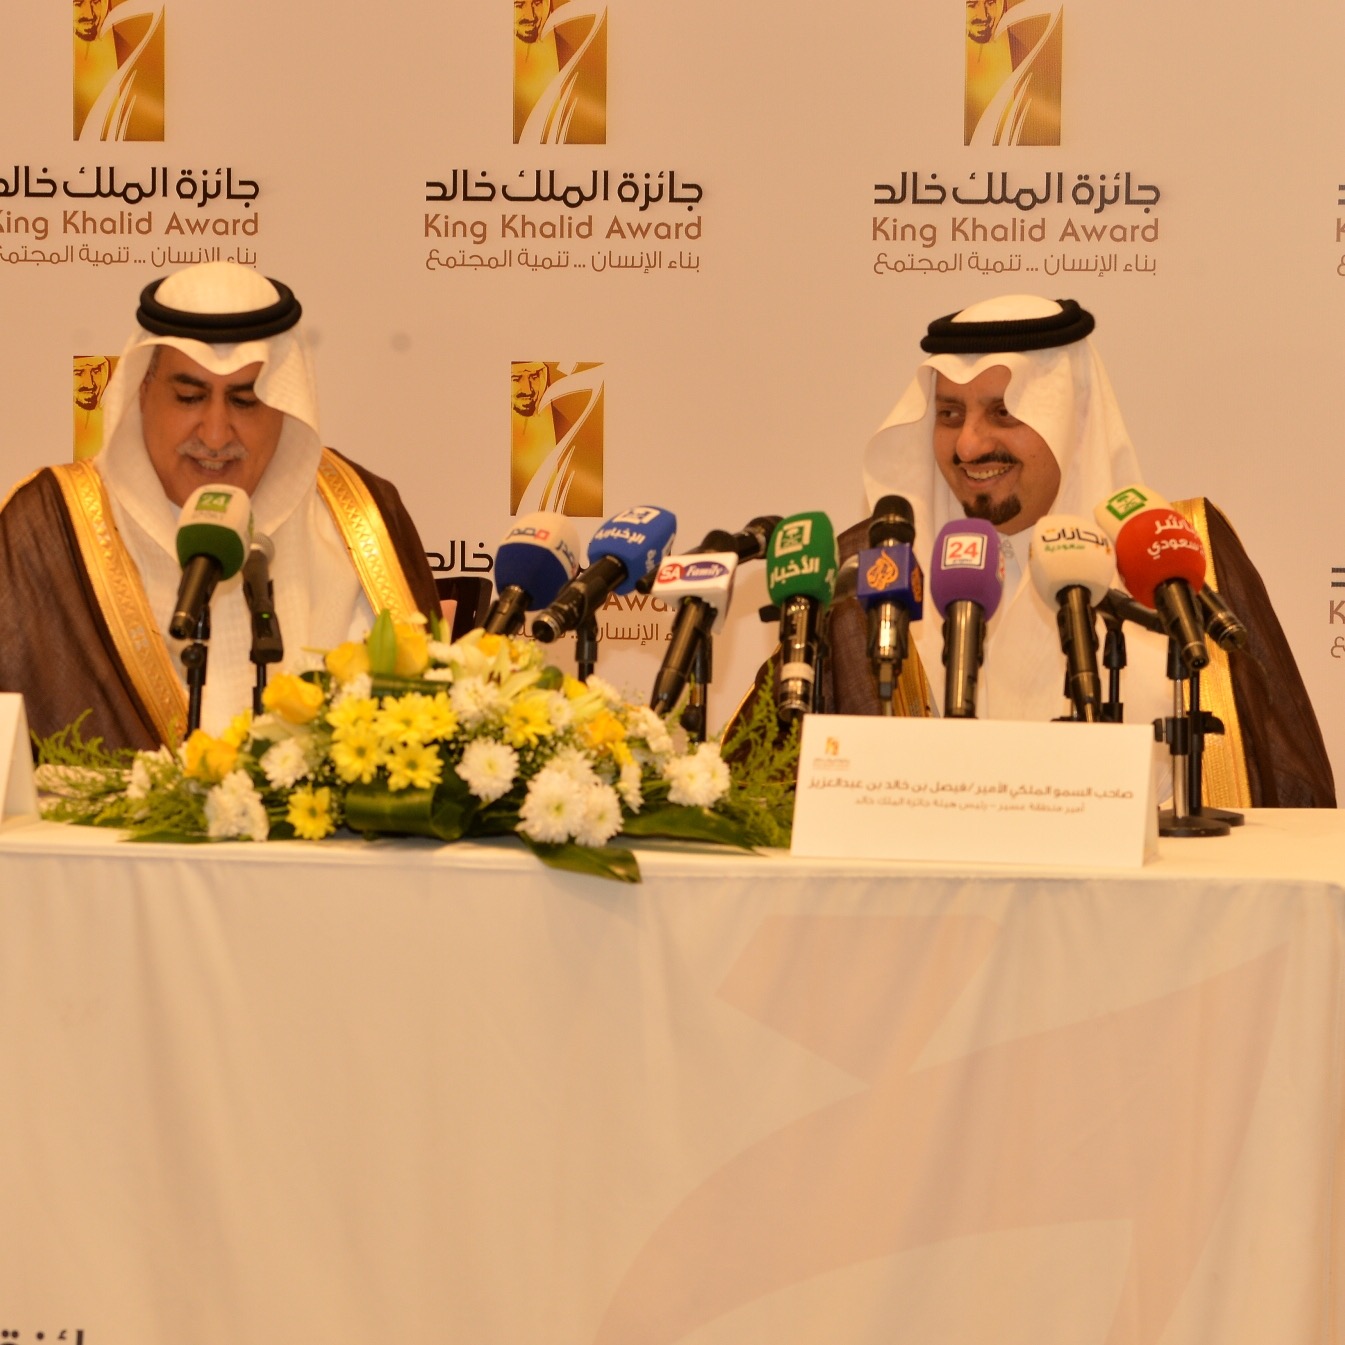 فيصل بن خالد يعلن أسماء الفائزين بجائزة الملك خالد لعام 2016